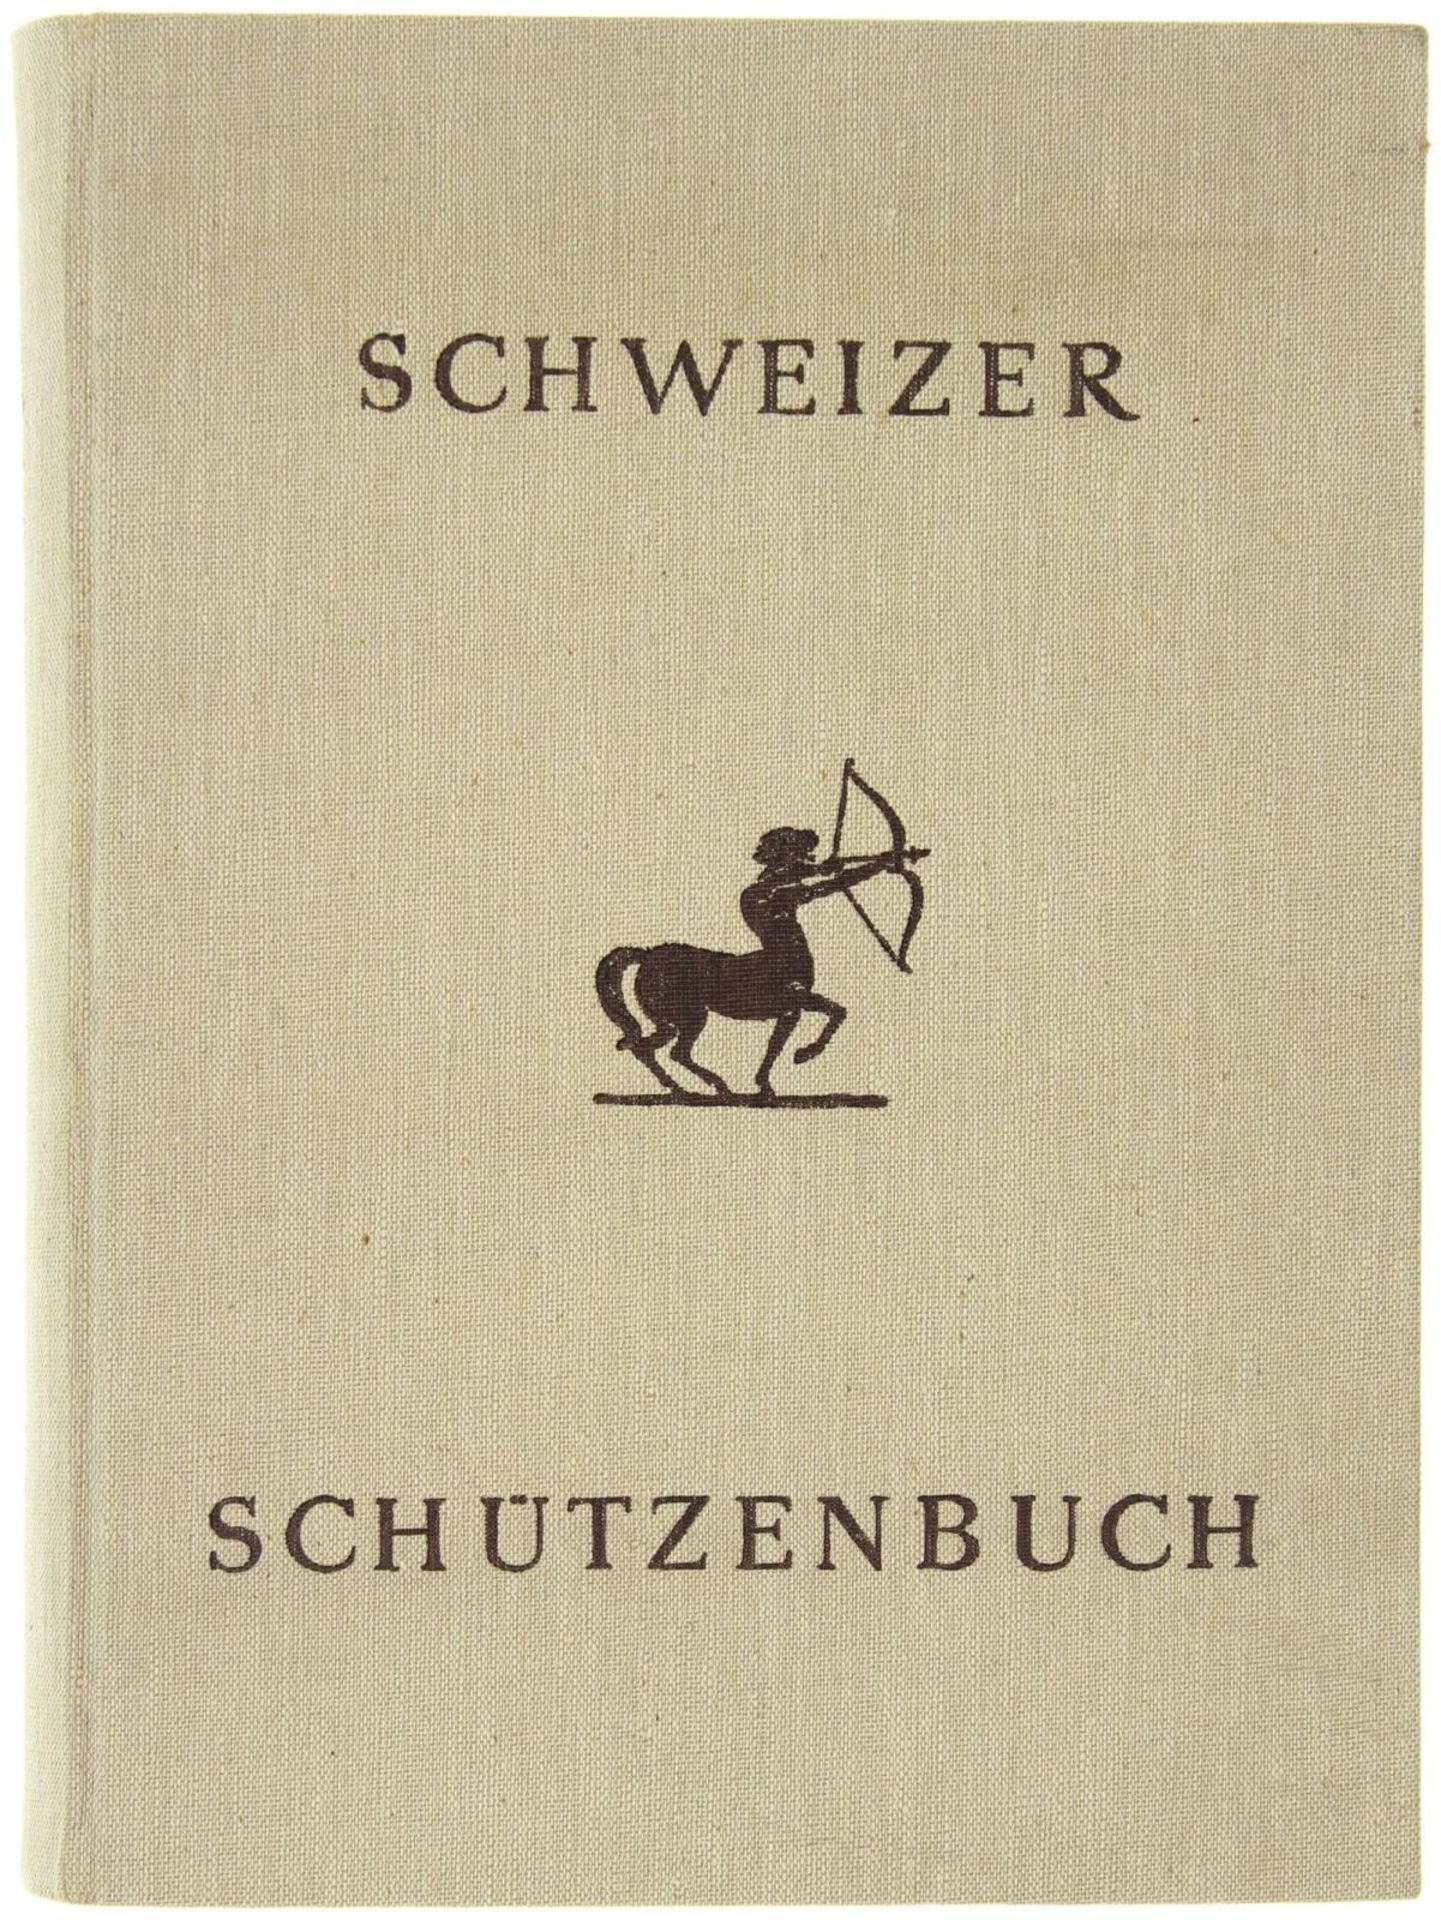 Schweizerisches Schützenbuch von Othmar Gurtner, Verkehrsverlag AG Zürich aus dem Jahre 1943. 287